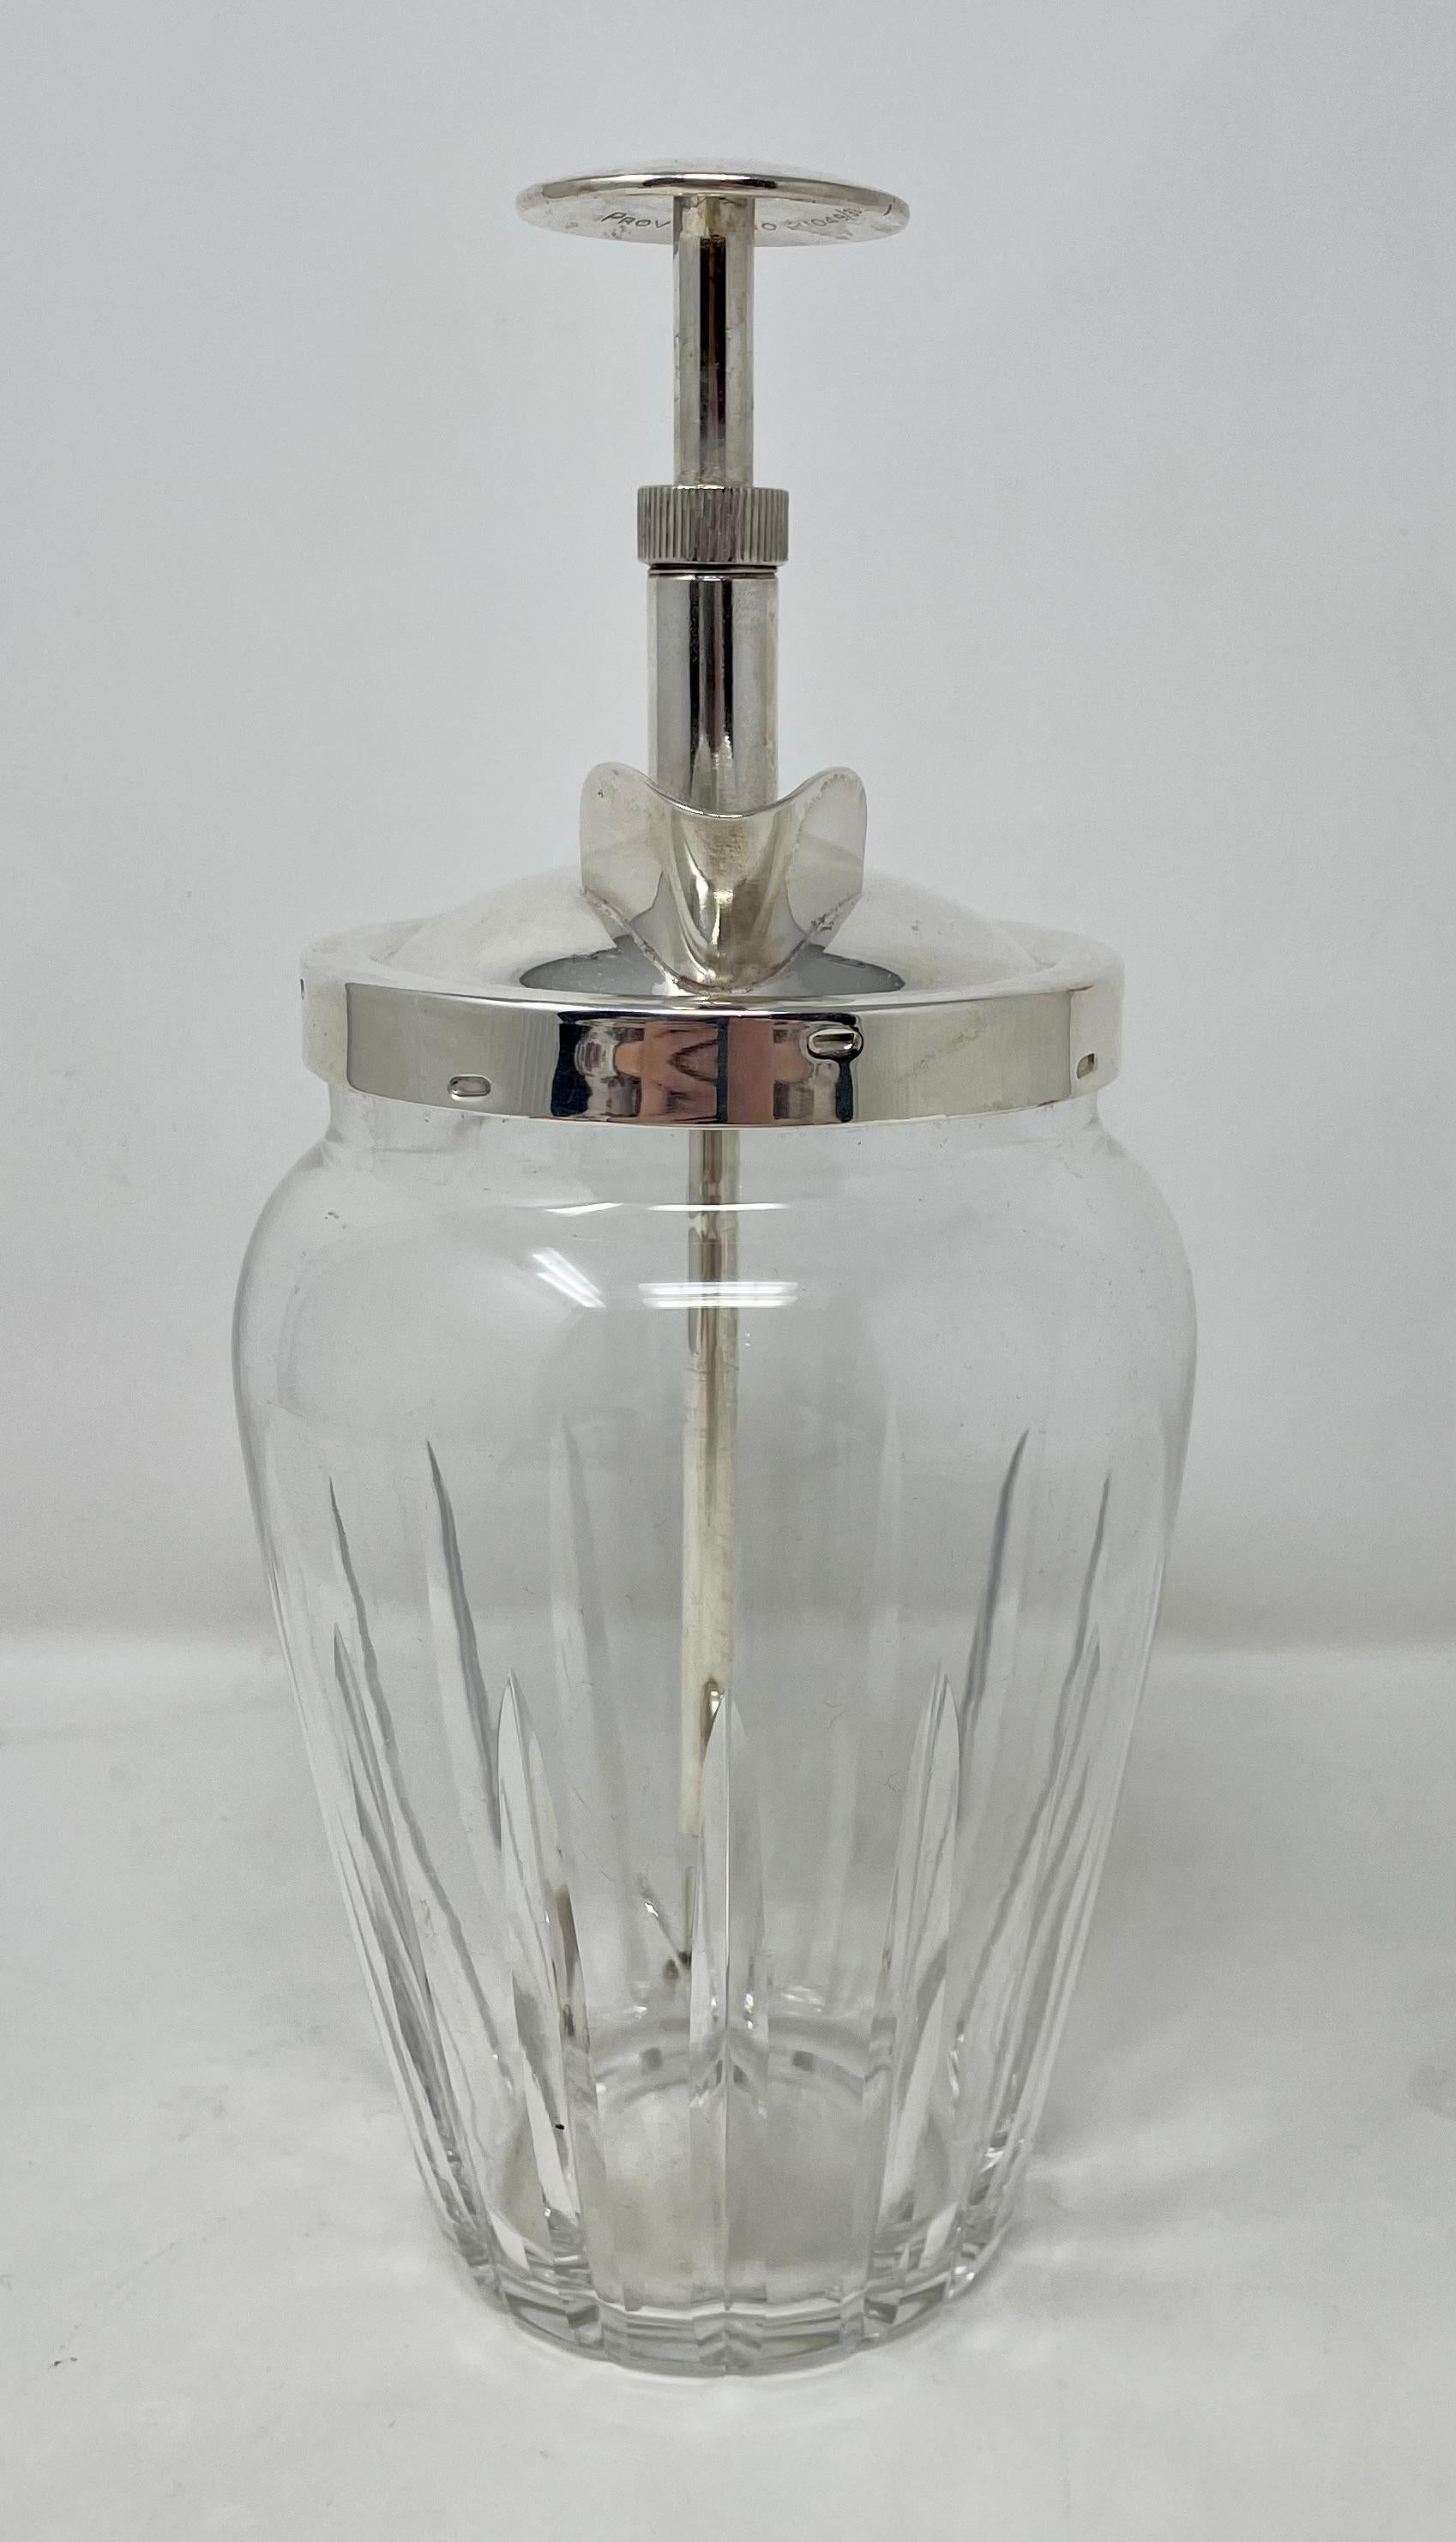 Shakers en métal argenté et cristal taillé de style Art déco, vers 1930.